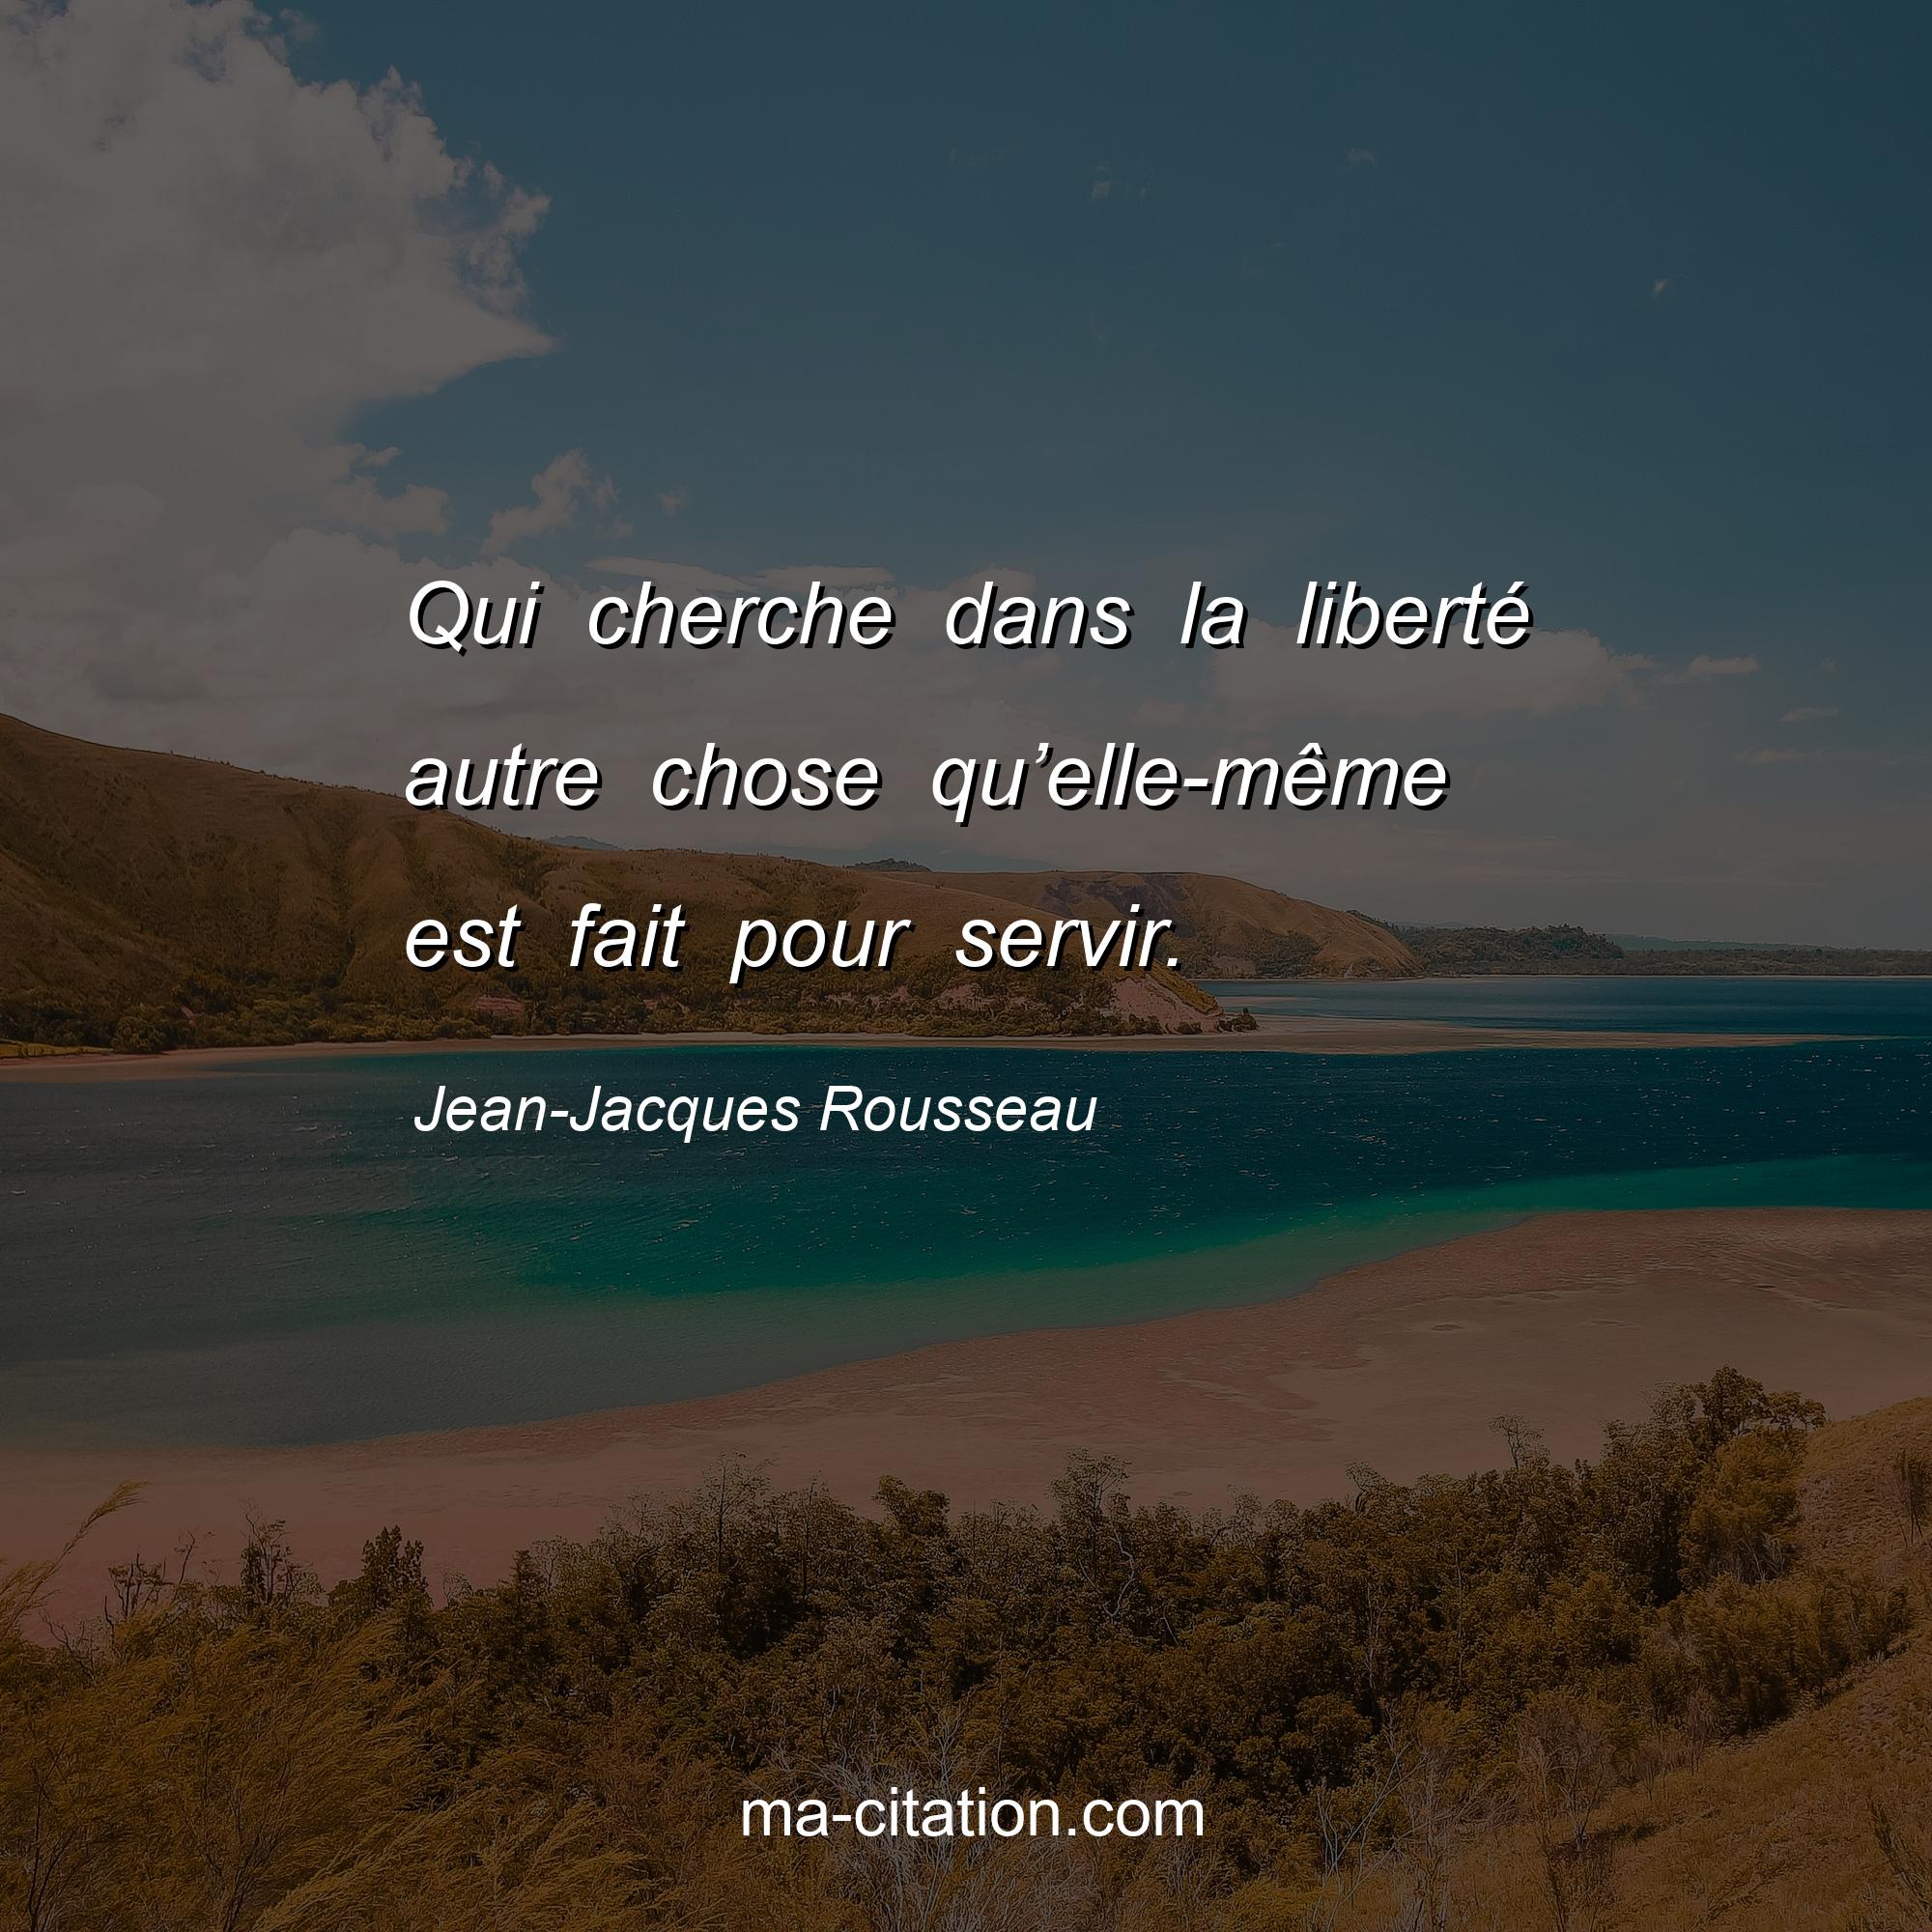 Jean-Jacques Rousseau : Qui cherche dans la liberté autre chose qu’elle-même est fait pour servir.